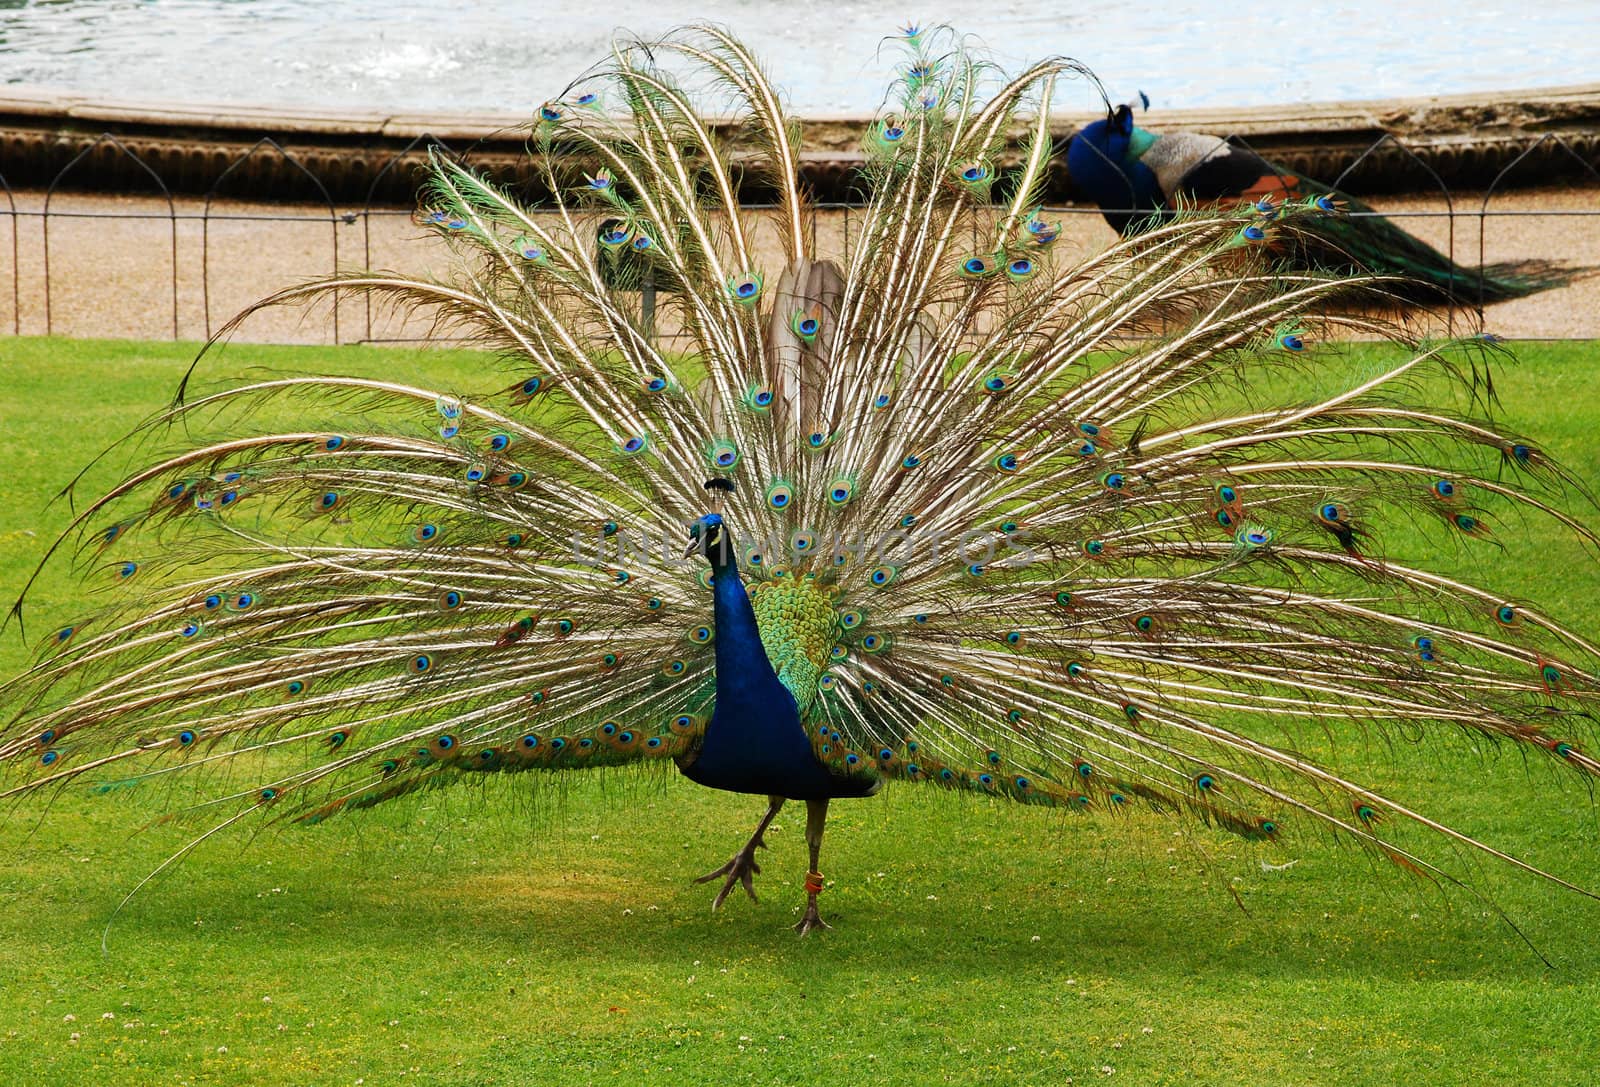 Male peacock in park by varbenov